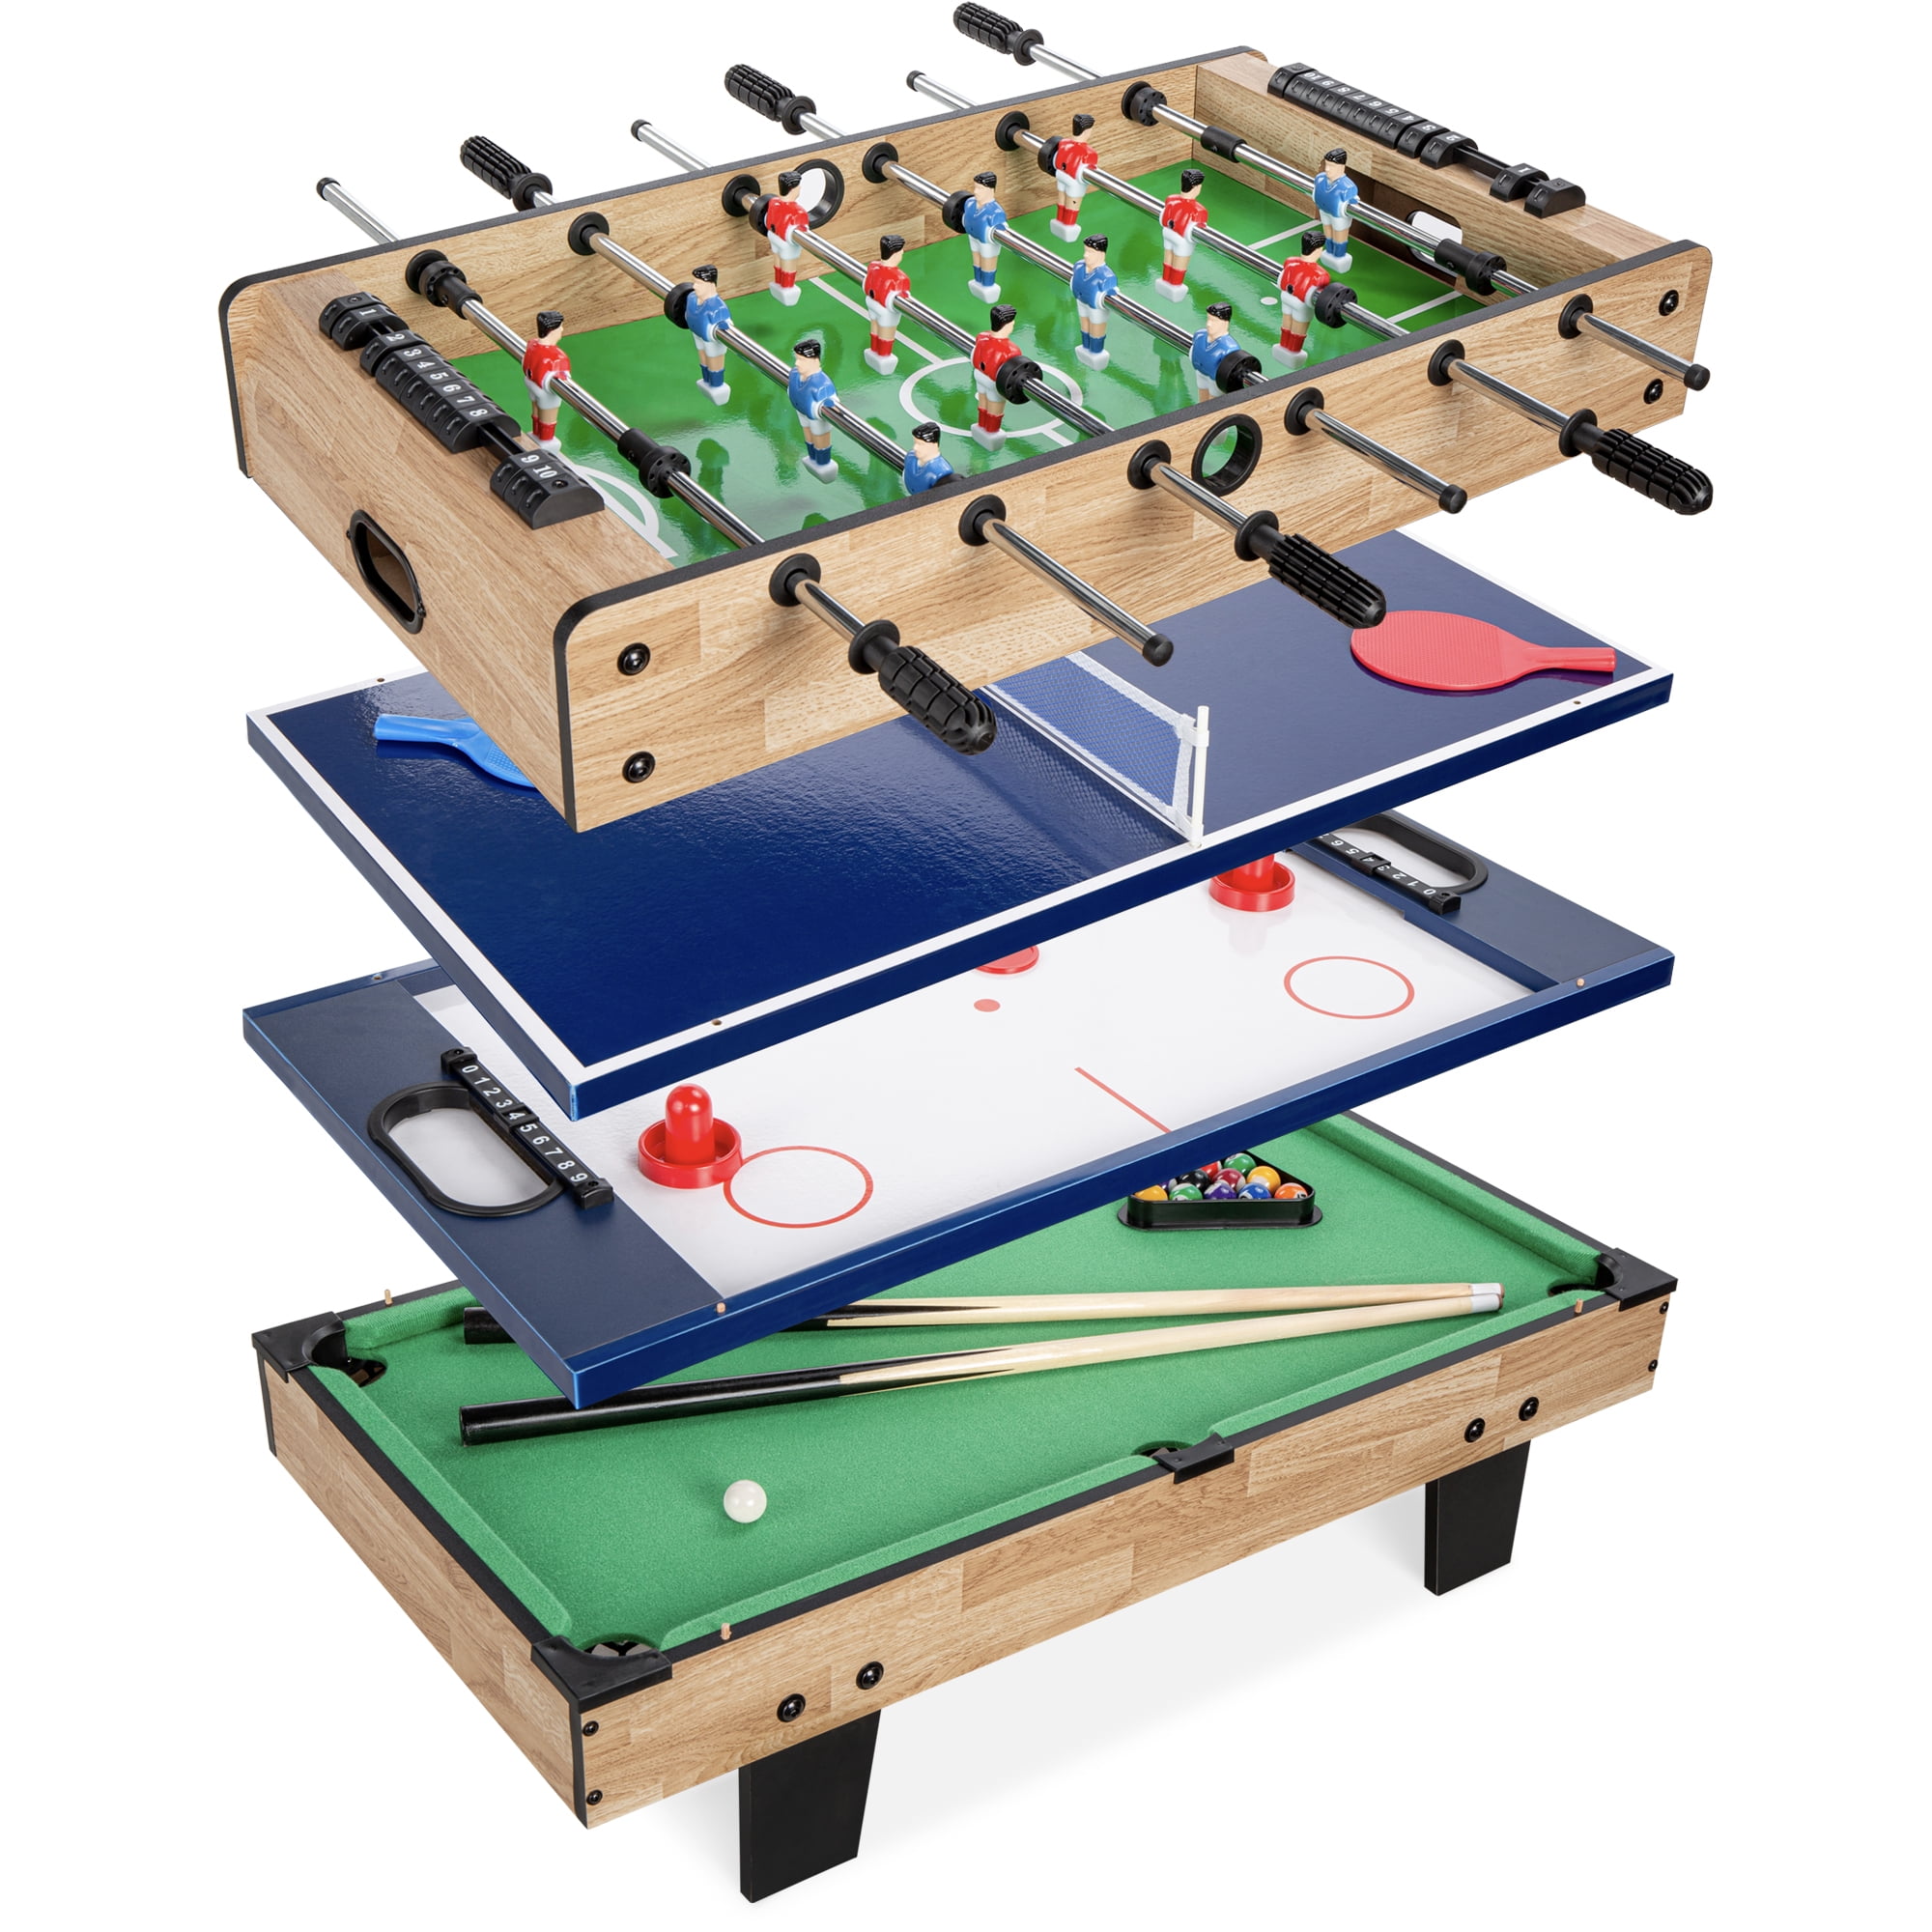 4 in 1 Multi Games Table Pool/ Foosball Football/ Air Hockey/ Table Tennis 